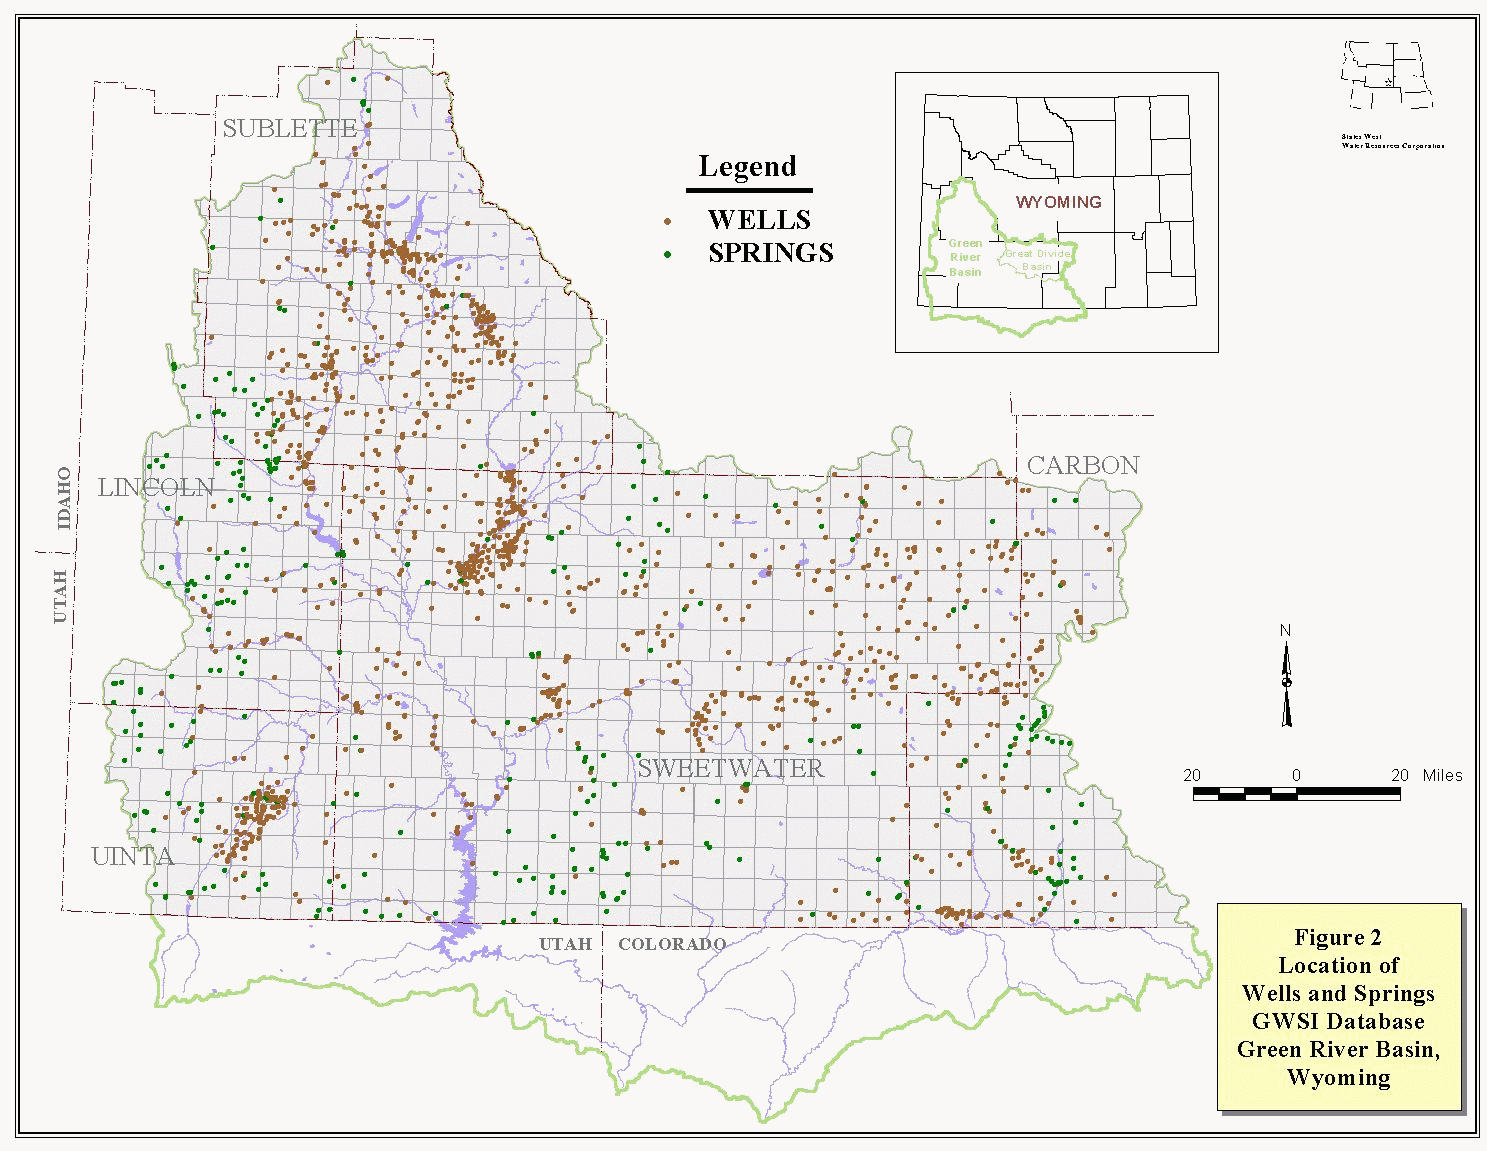 Wyoming State Water Plan - Green River Basin